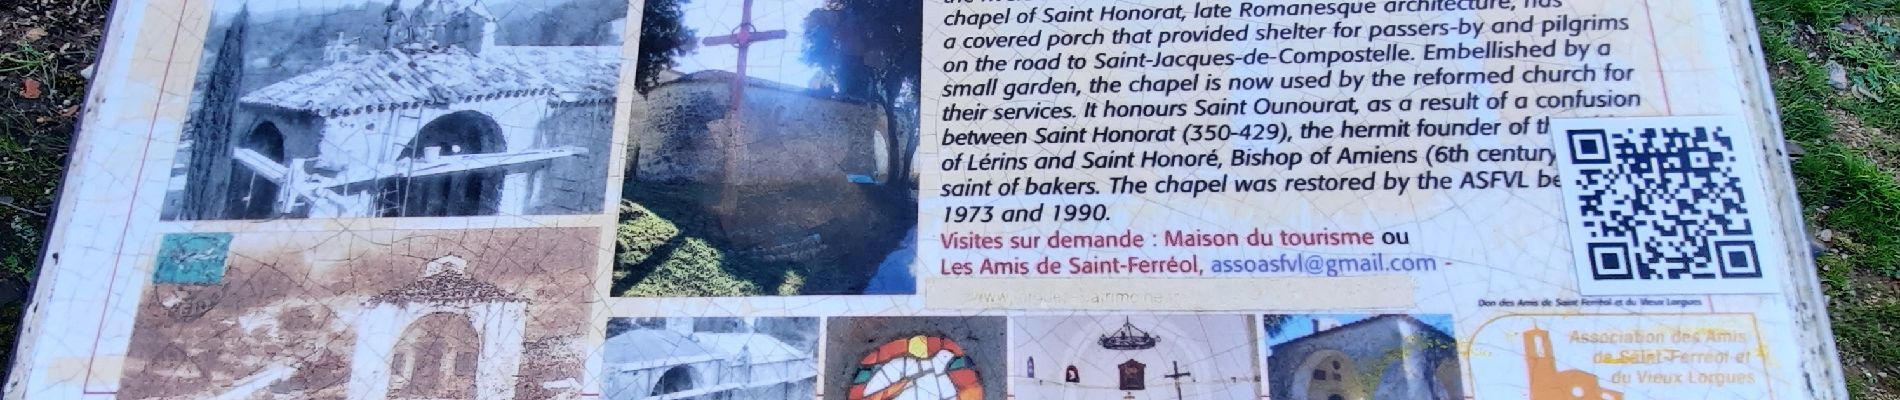 POI Lorgues - Chapelle Saint-Honorat - Photo